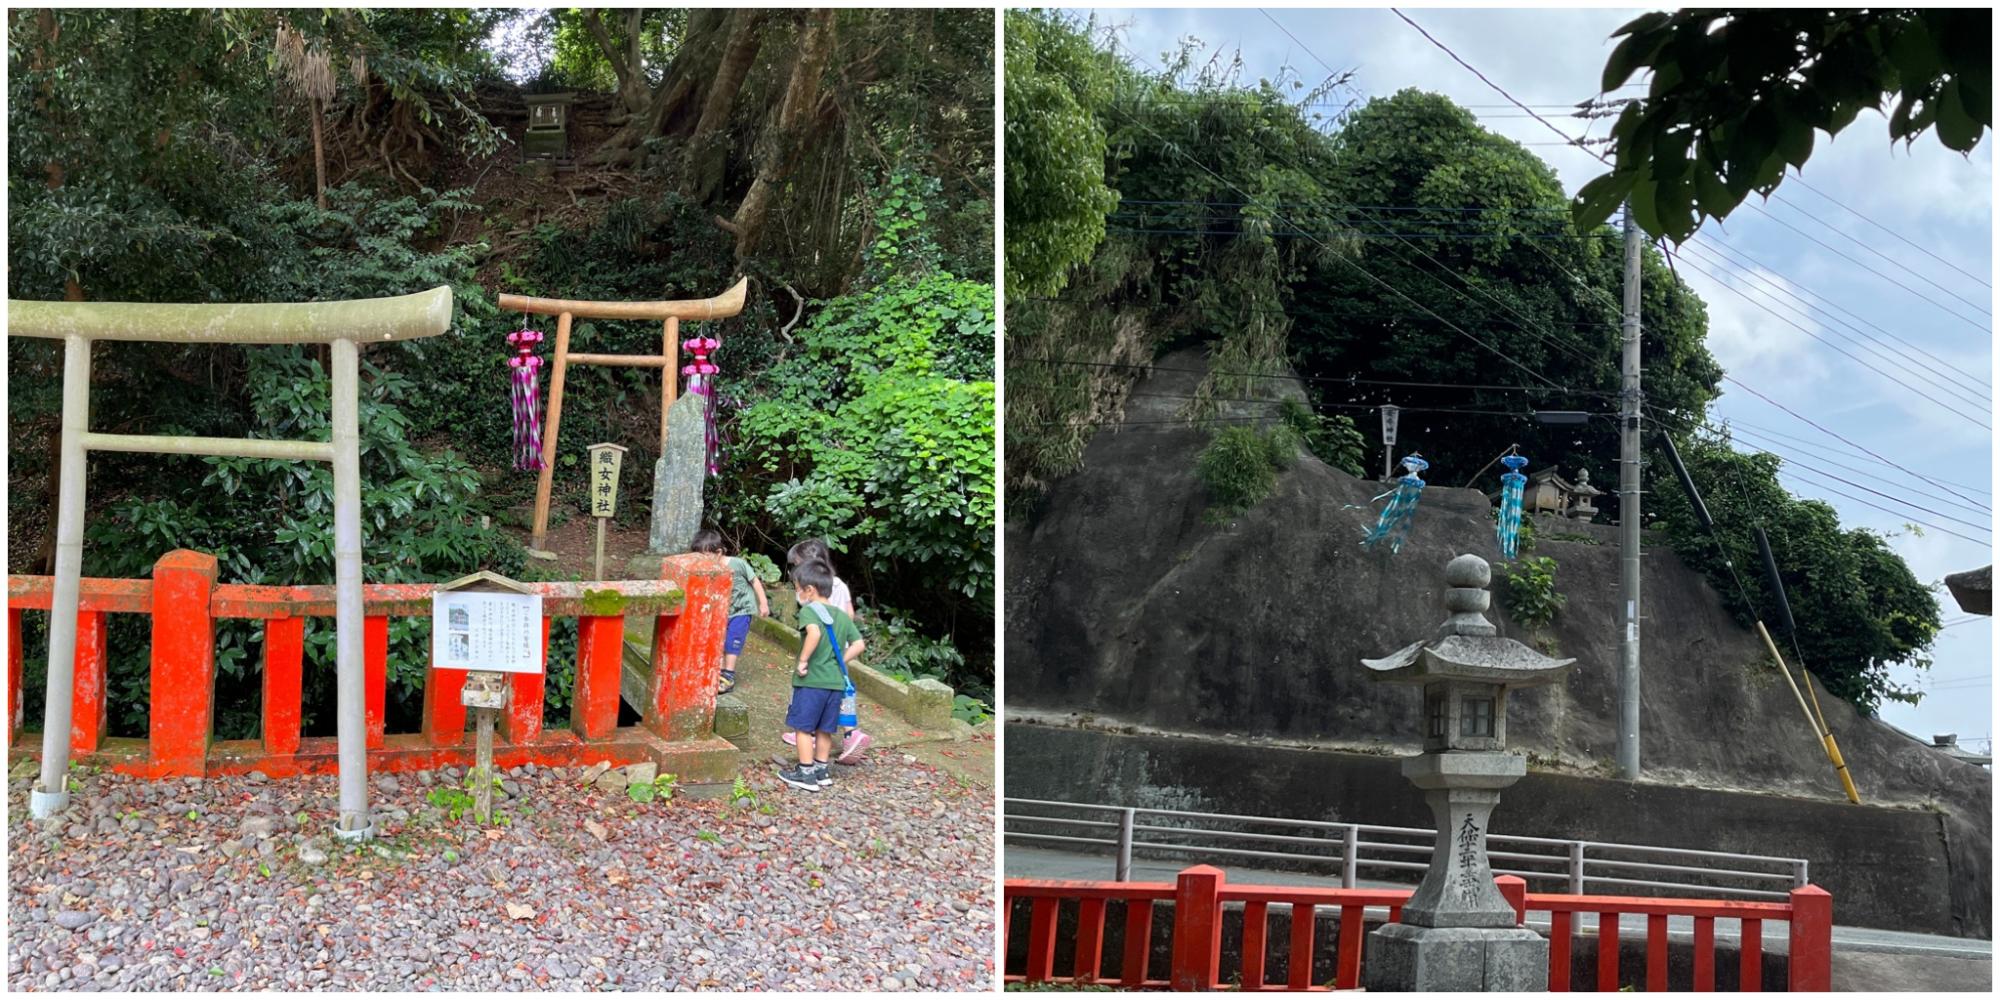 織女神社(左)と牽牛神社(右)。織女神社のすぐ前を「天の川」が流れています